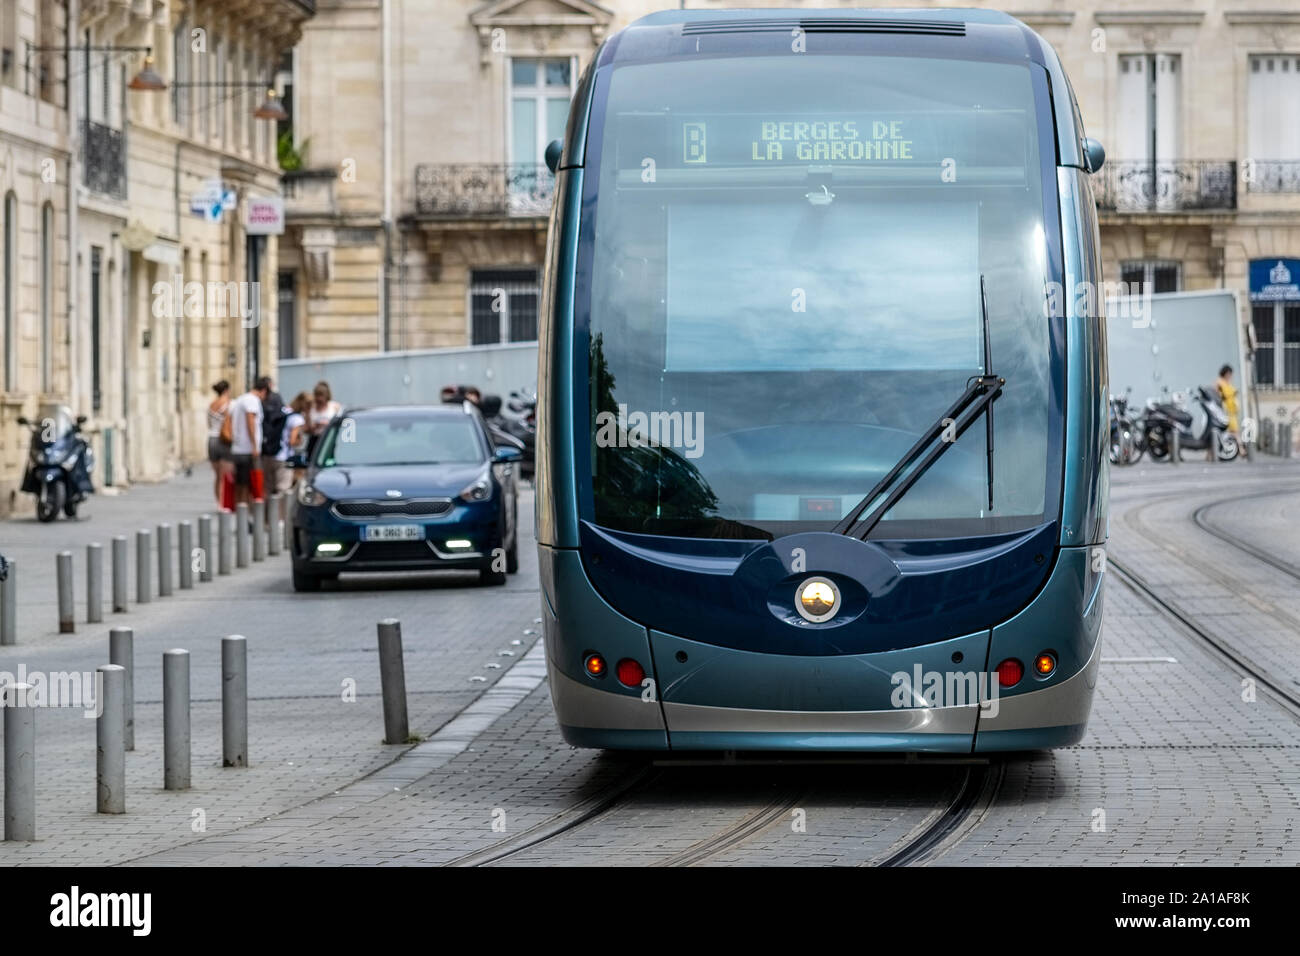 Un tram circulant le long de la rue du centre de Bordeaux, France, Europe Banque D'Images